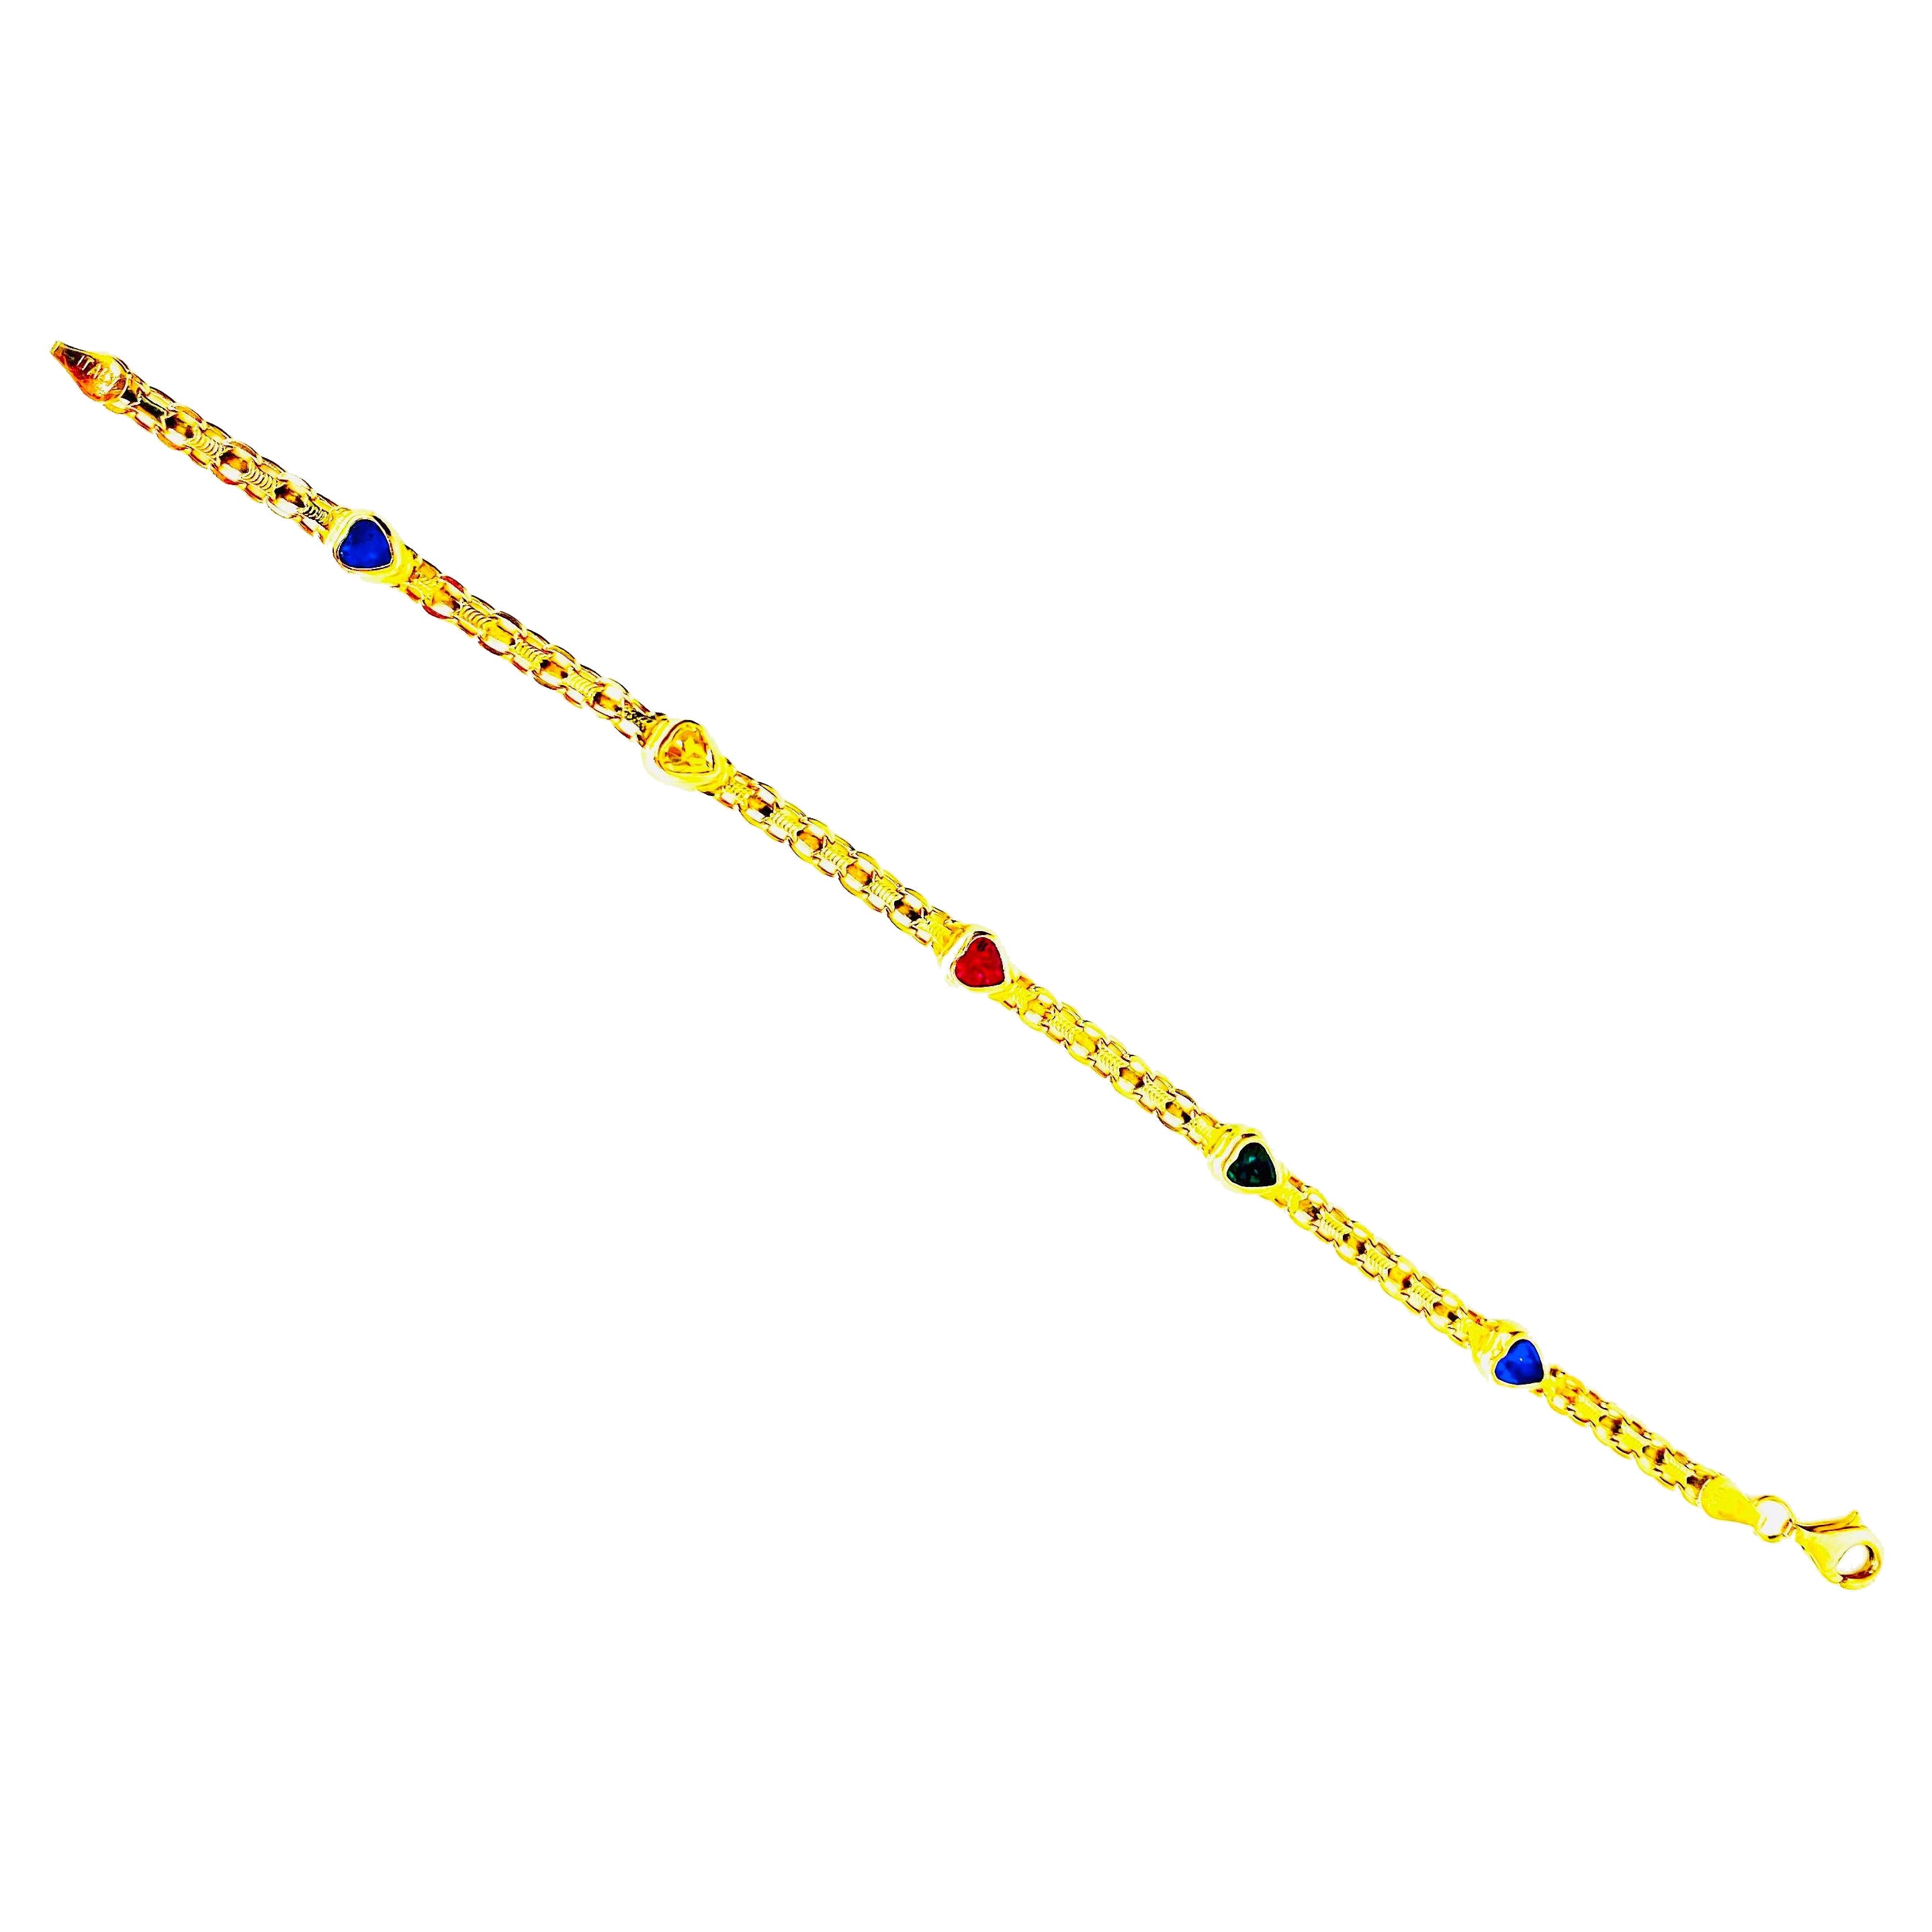 Bracelet vintage en forme de coeur avec pierres précieuses multicolores en or 14k. Le bracelet mesure 6 mm de large et 7 pouces de long. Le bracelet pèse 6,3 grammes d'or massif 14k.